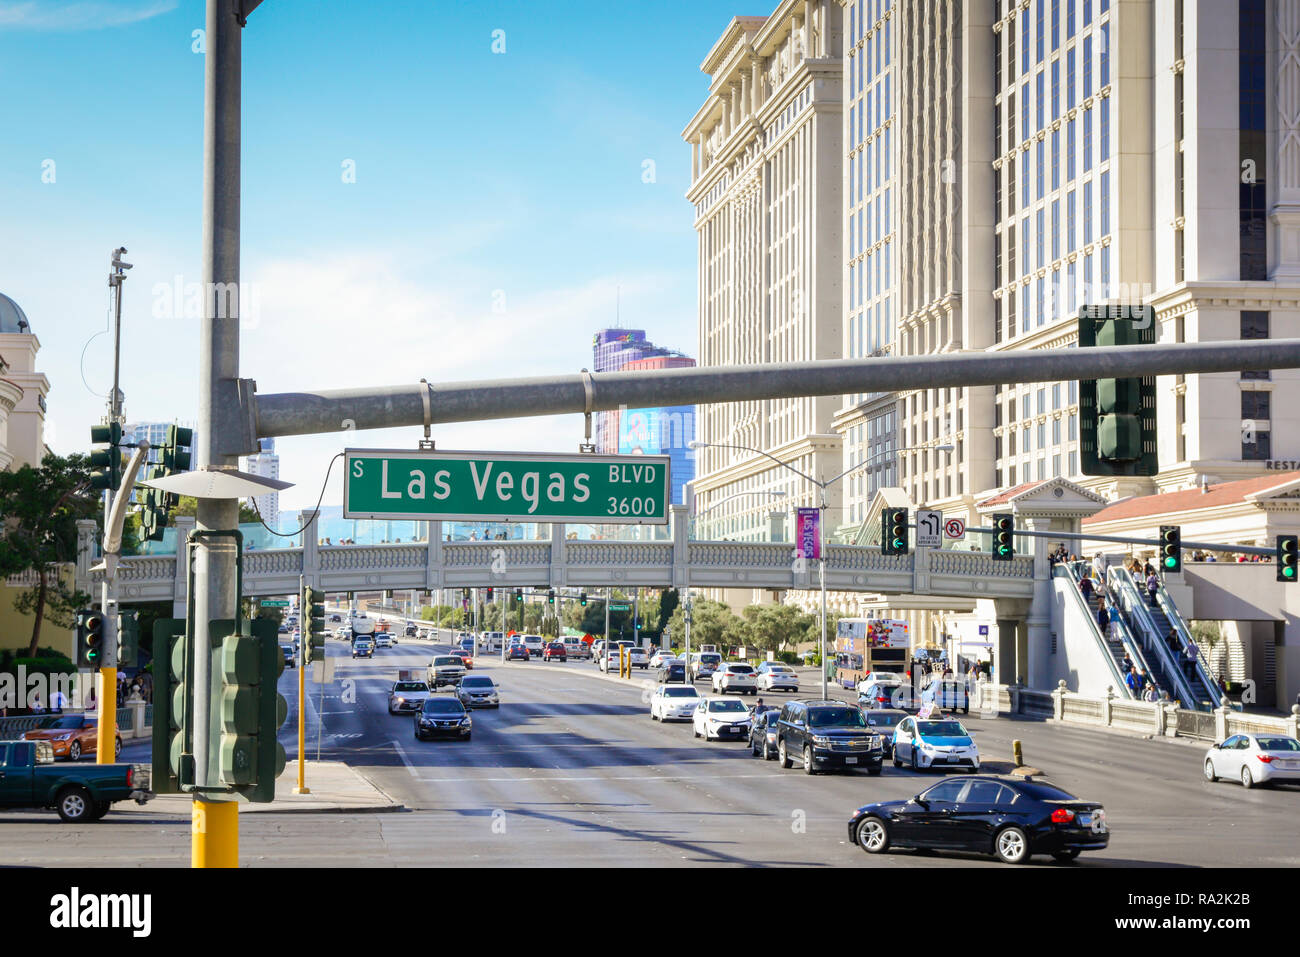 Plaque de rue pour Las Vegas Blvd, connu sous le nom de Las Vegas Strip, à Las  Vegas, NV avec hôtels et casinos le long de la bande le long de passerelles